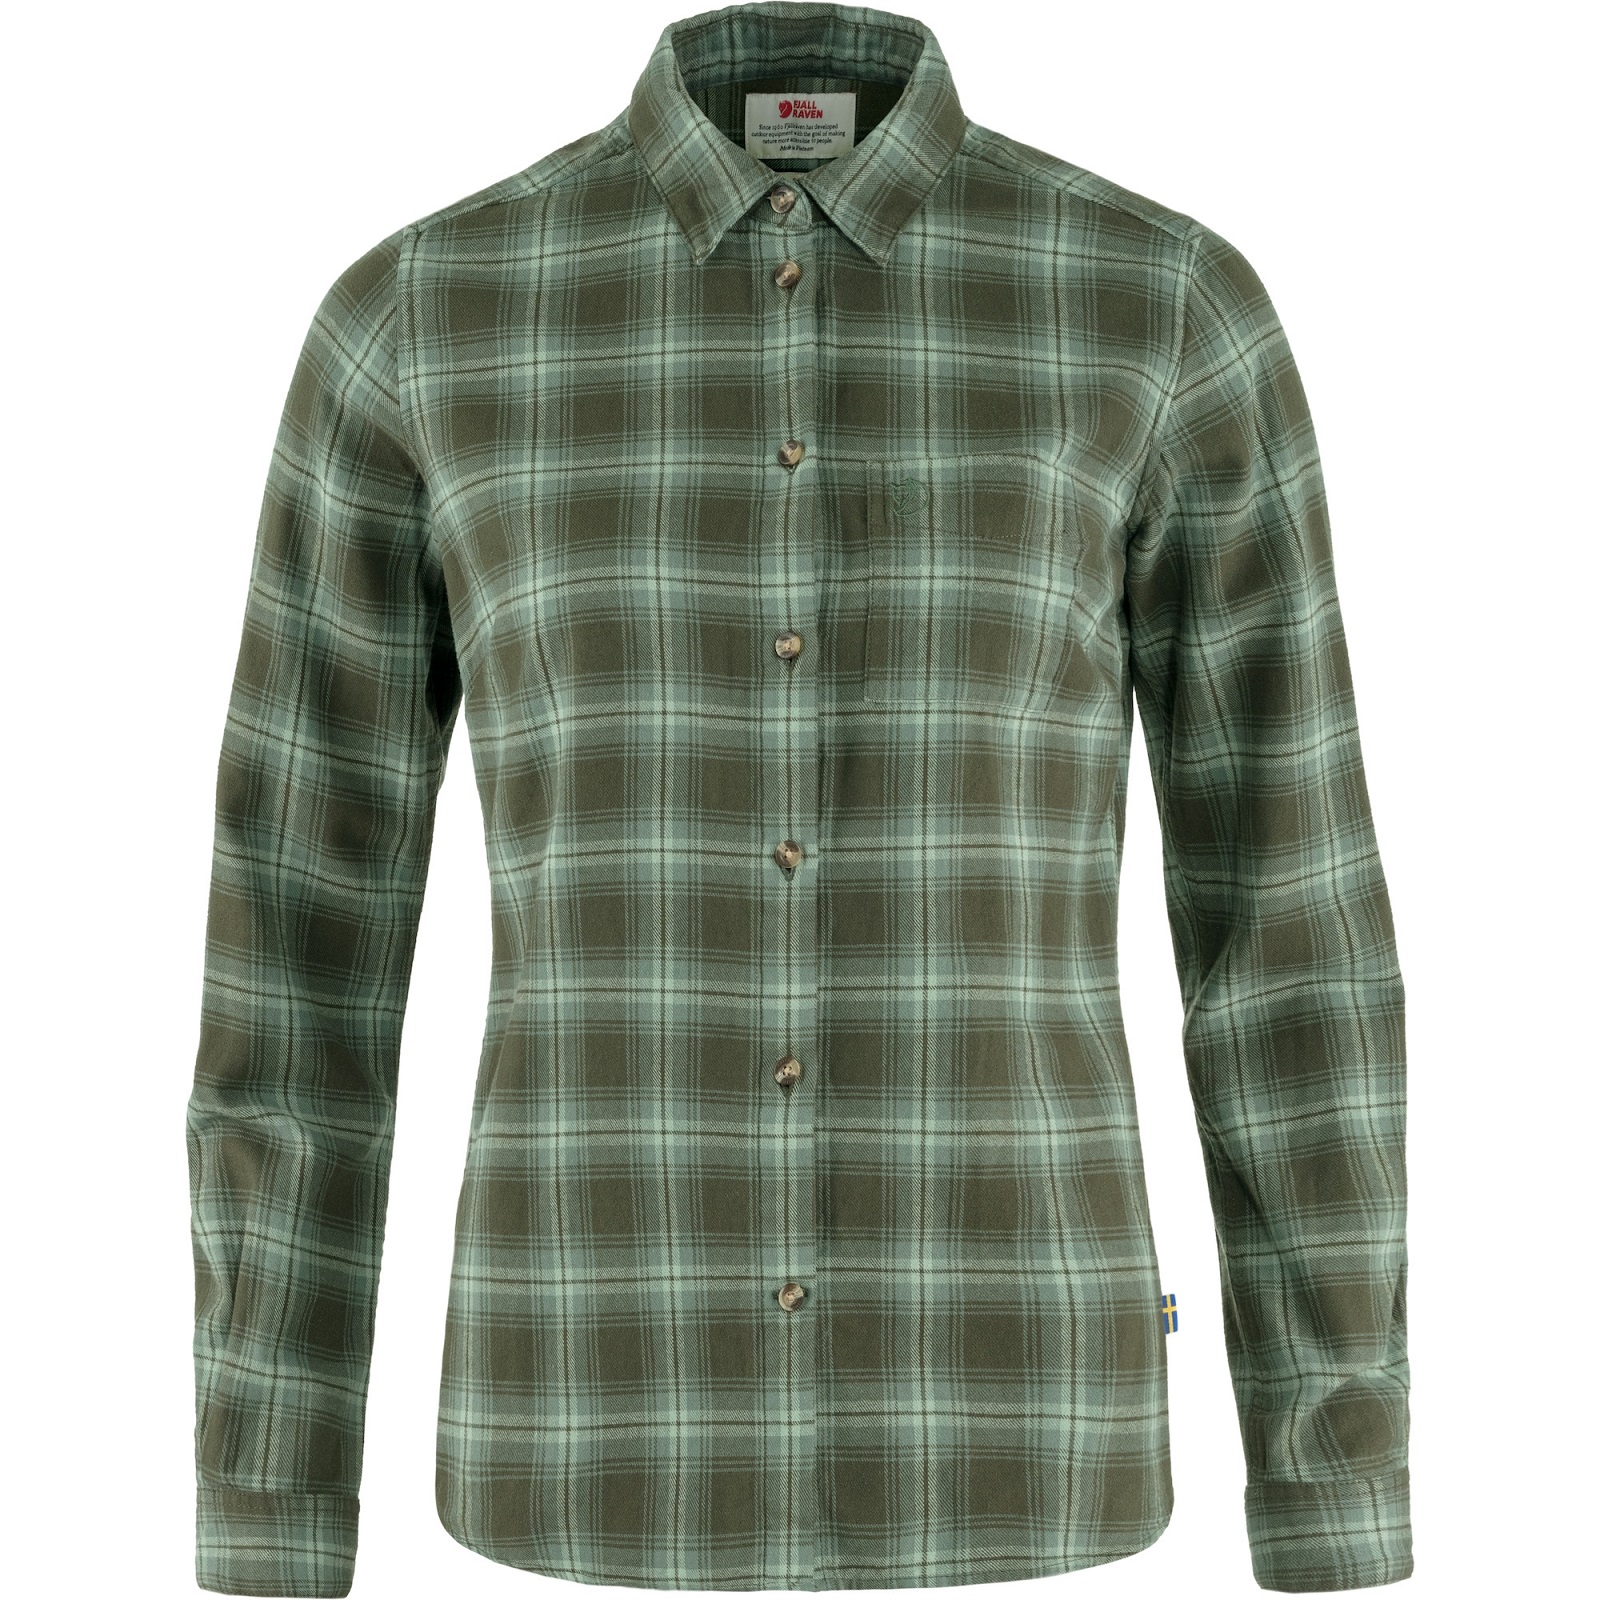 frisliv-fjaellraeven-oevik-flannel-shirt-w-deep-forest-deep-patina-89833-662-614-a